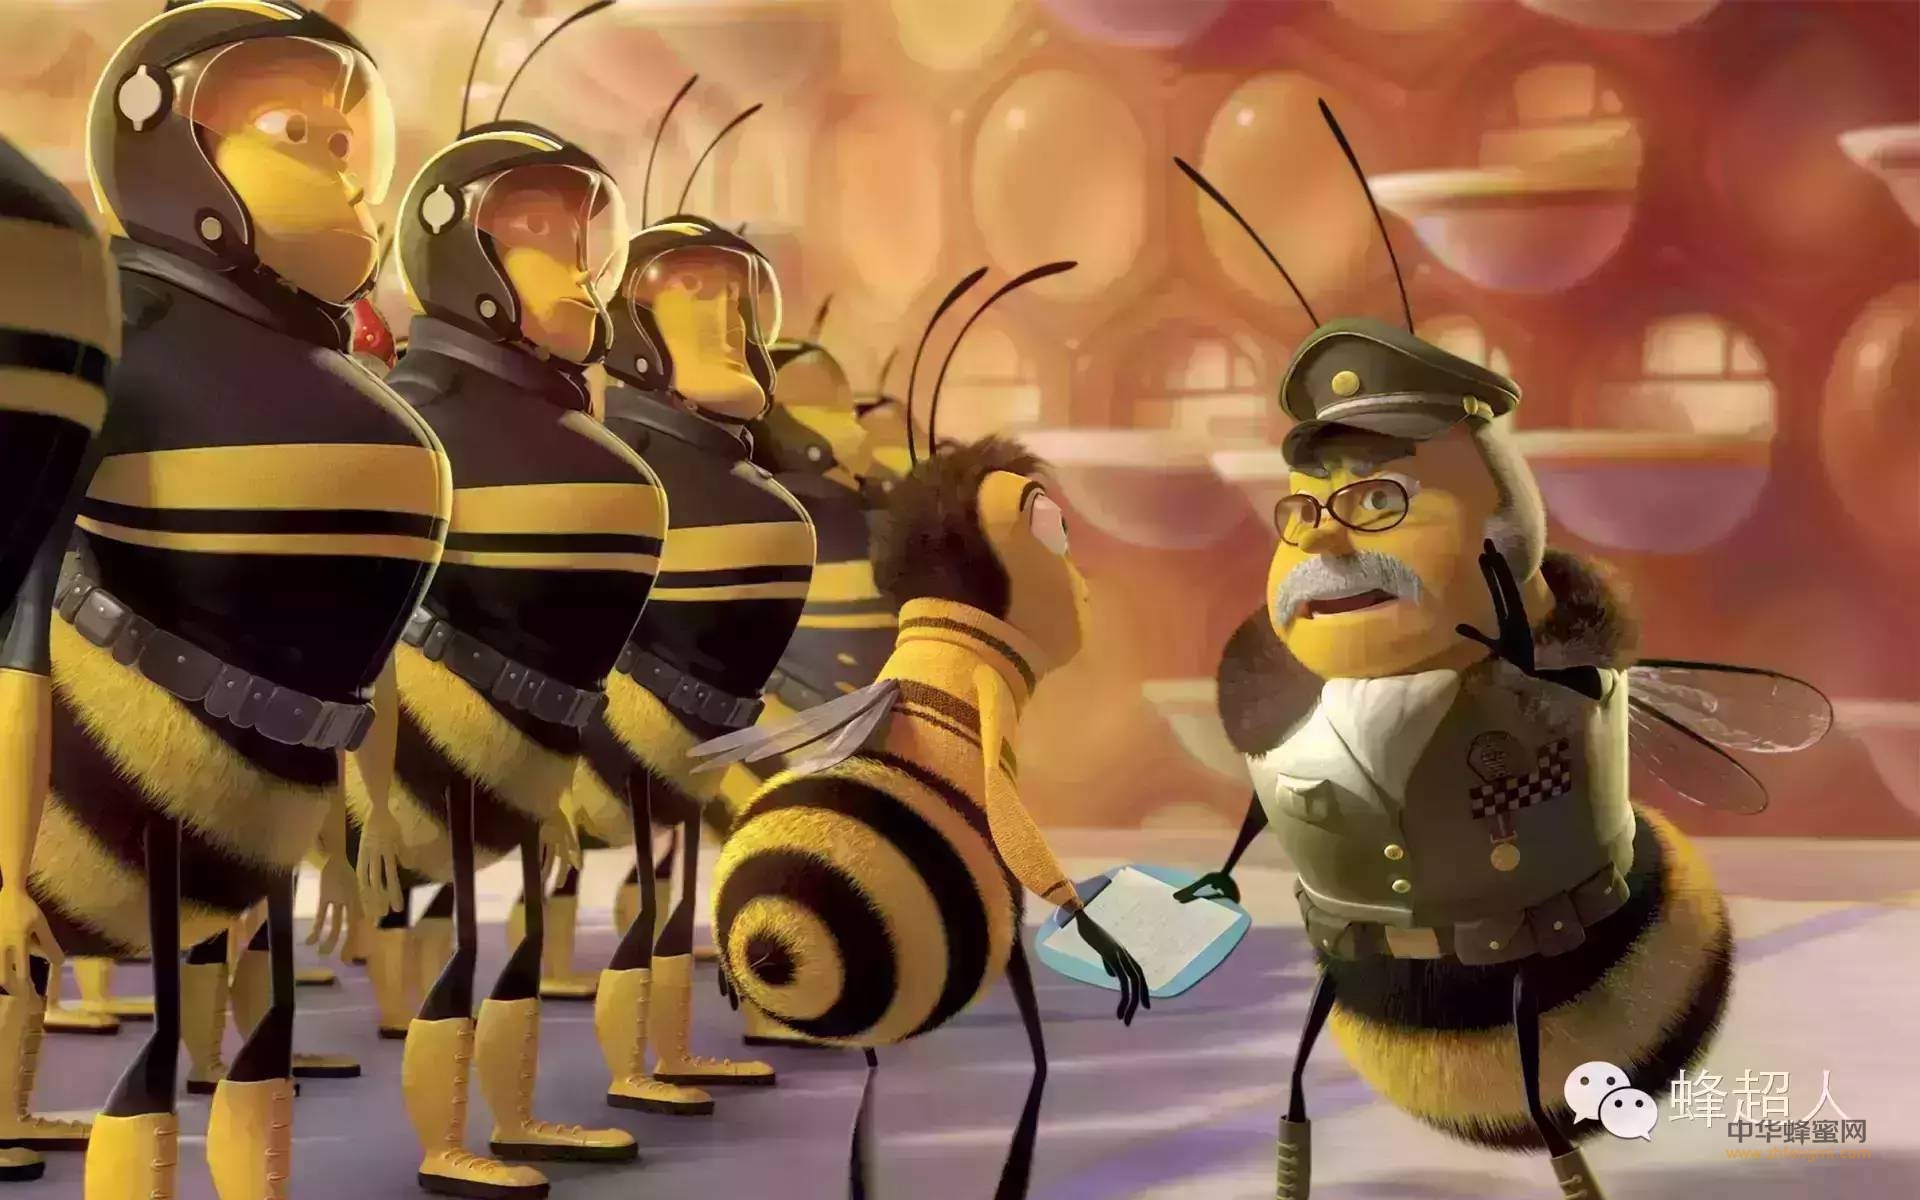 【蜂超人】蜂蜜女王已下令，所有蜂超人听令，即刻打响保卫蜂产业第一战！